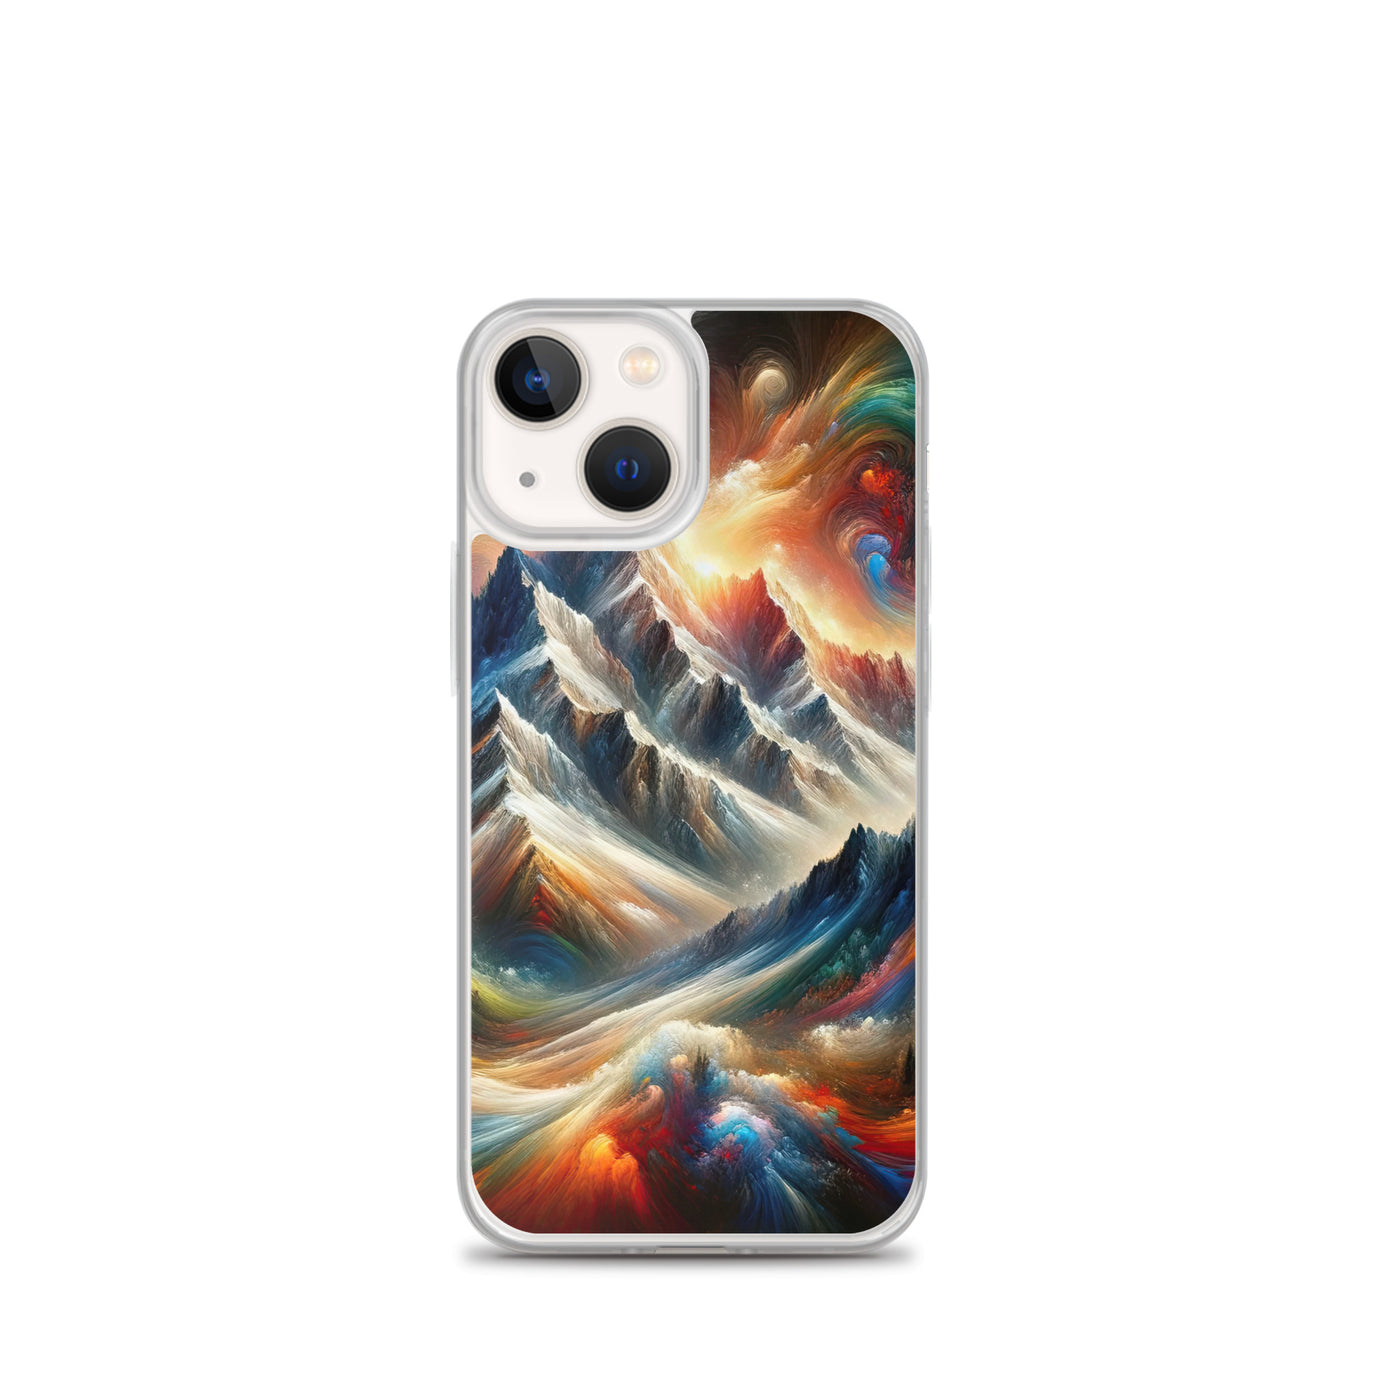 Expressionistische Alpen, Berge: Gemälde mit Farbexplosion - iPhone Schutzhülle (durchsichtig) berge xxx yyy zzz iPhone 13 mini